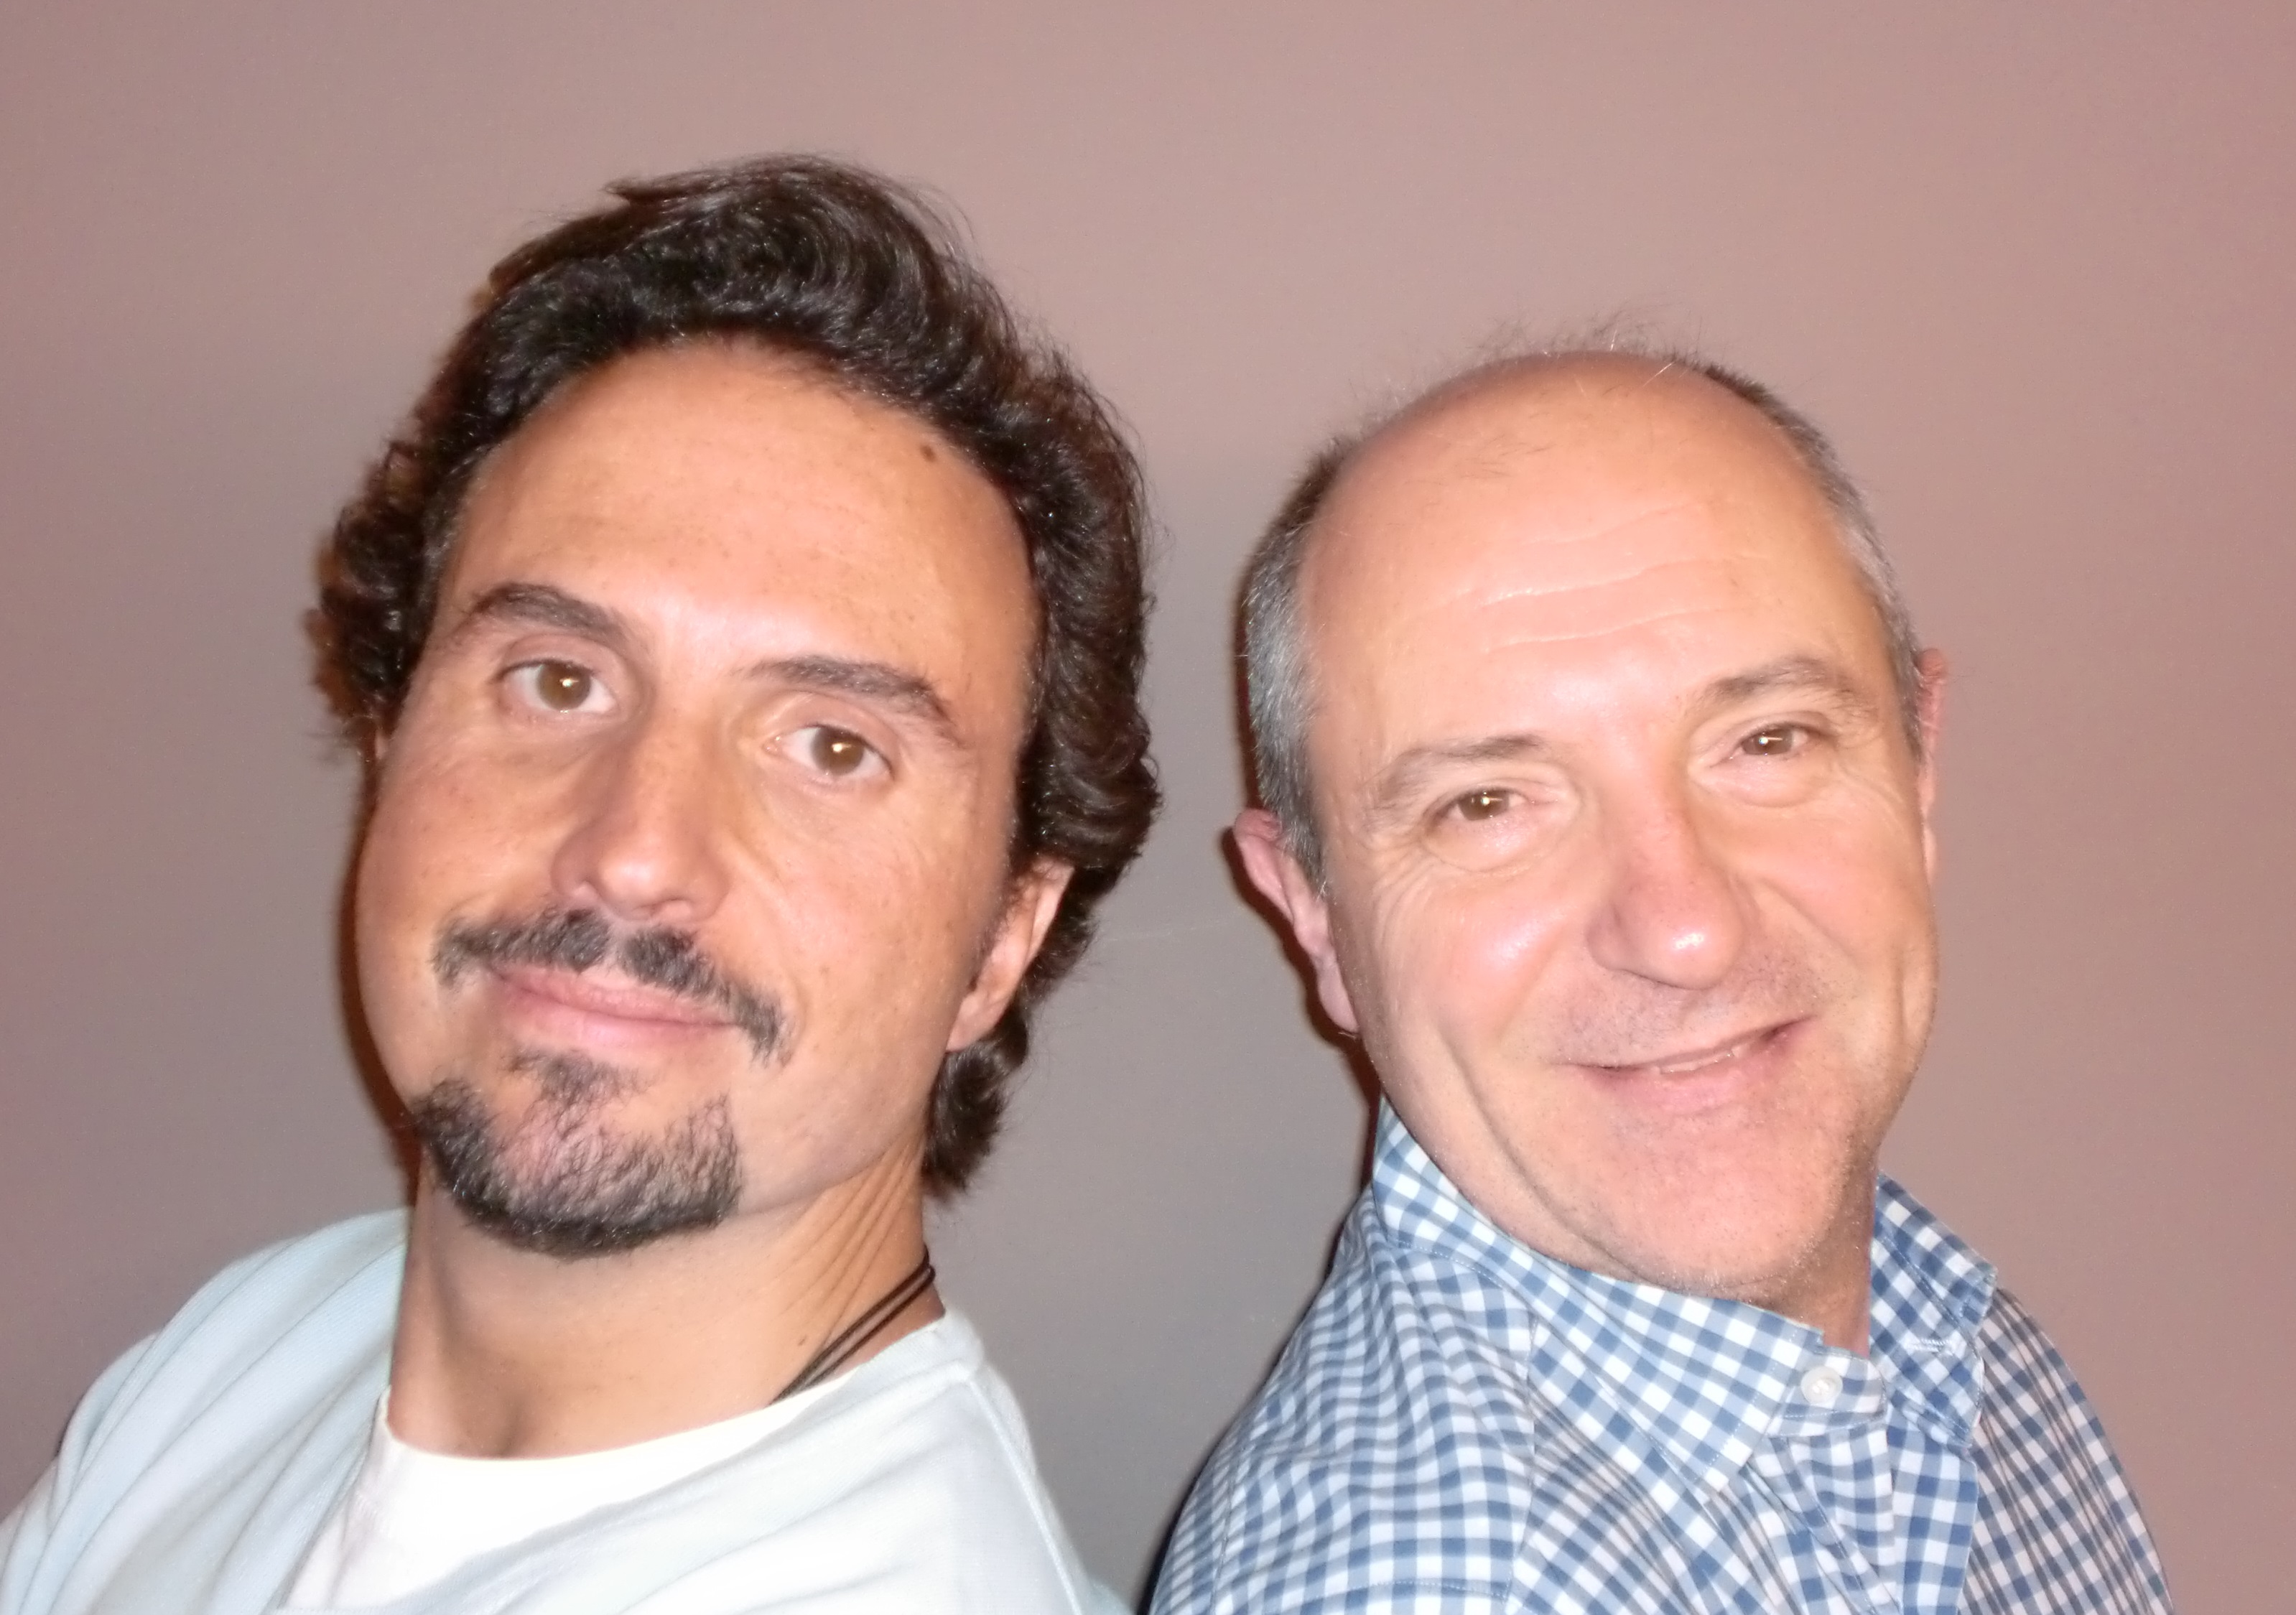 A la derecha, Guillem Recolons, Campeón de España de marca personal y Personal Branding - vive-sin-trabajar-marca-personal-post